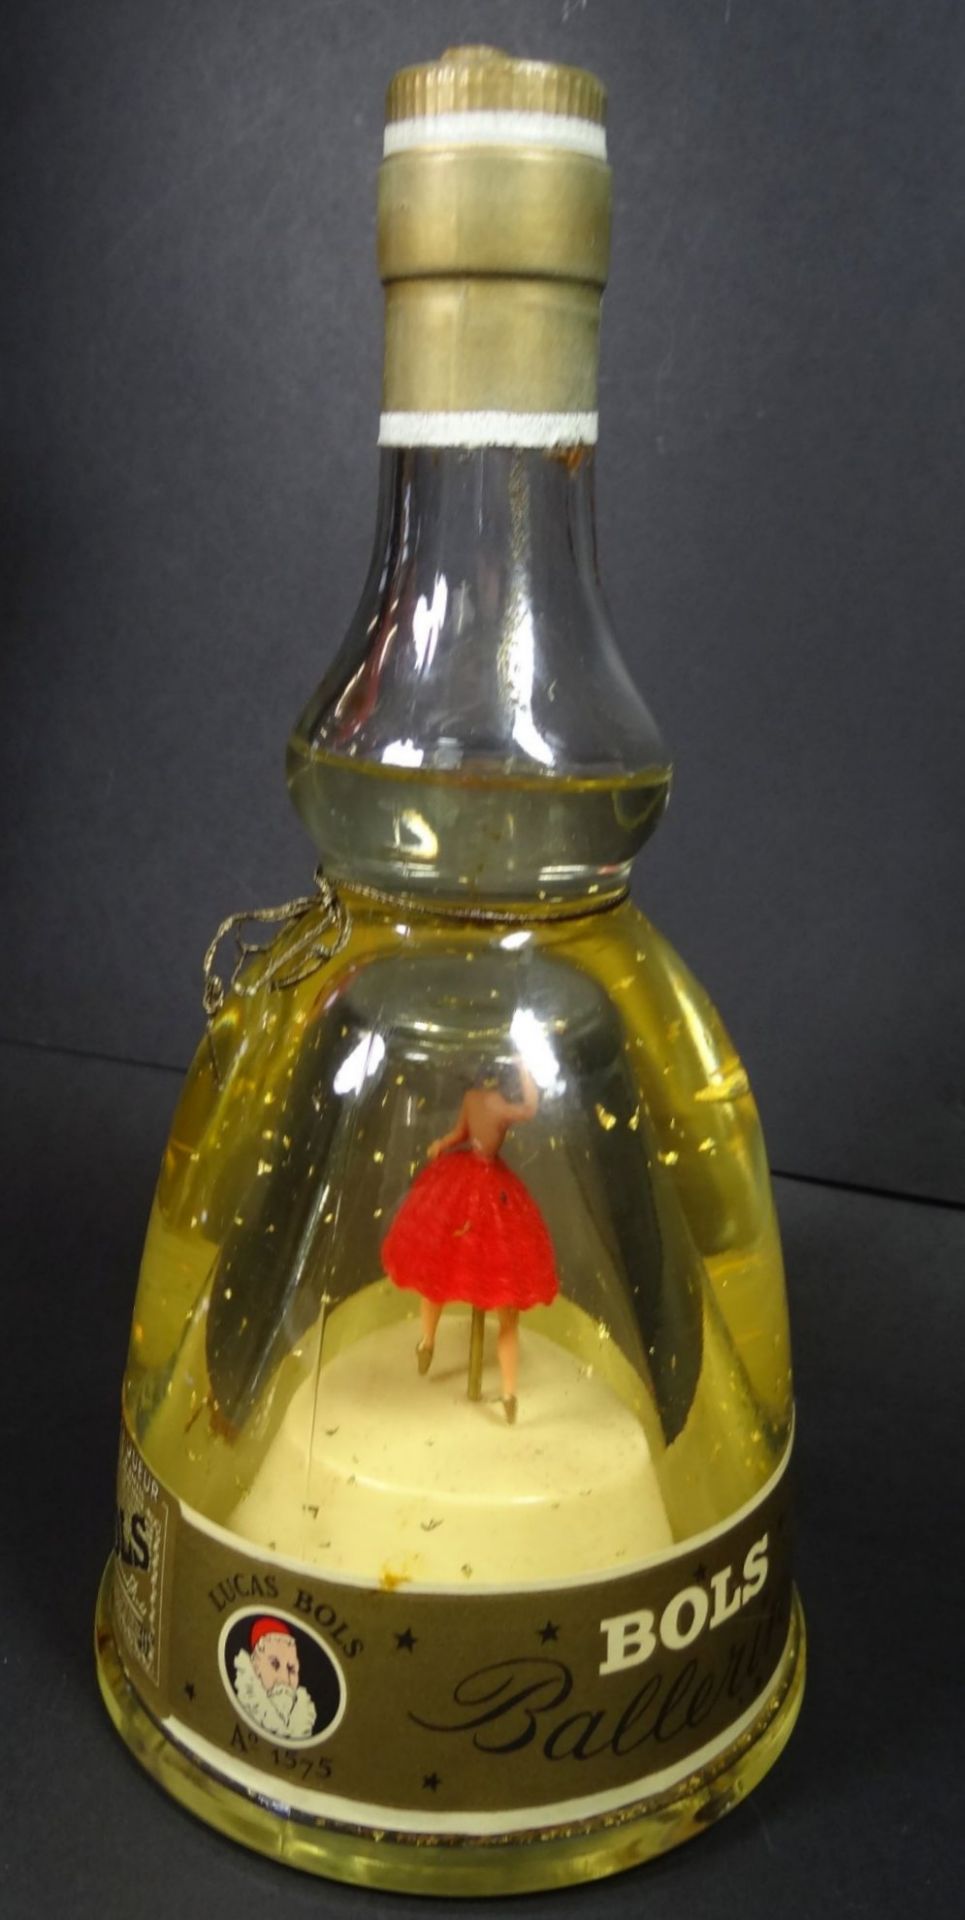 Bols Likör Flasche mit Ballerina und Spieluhr, orig. gefüllt, funktionstüchtig, gut erhalten, H-24 - Bild 4 aus 4